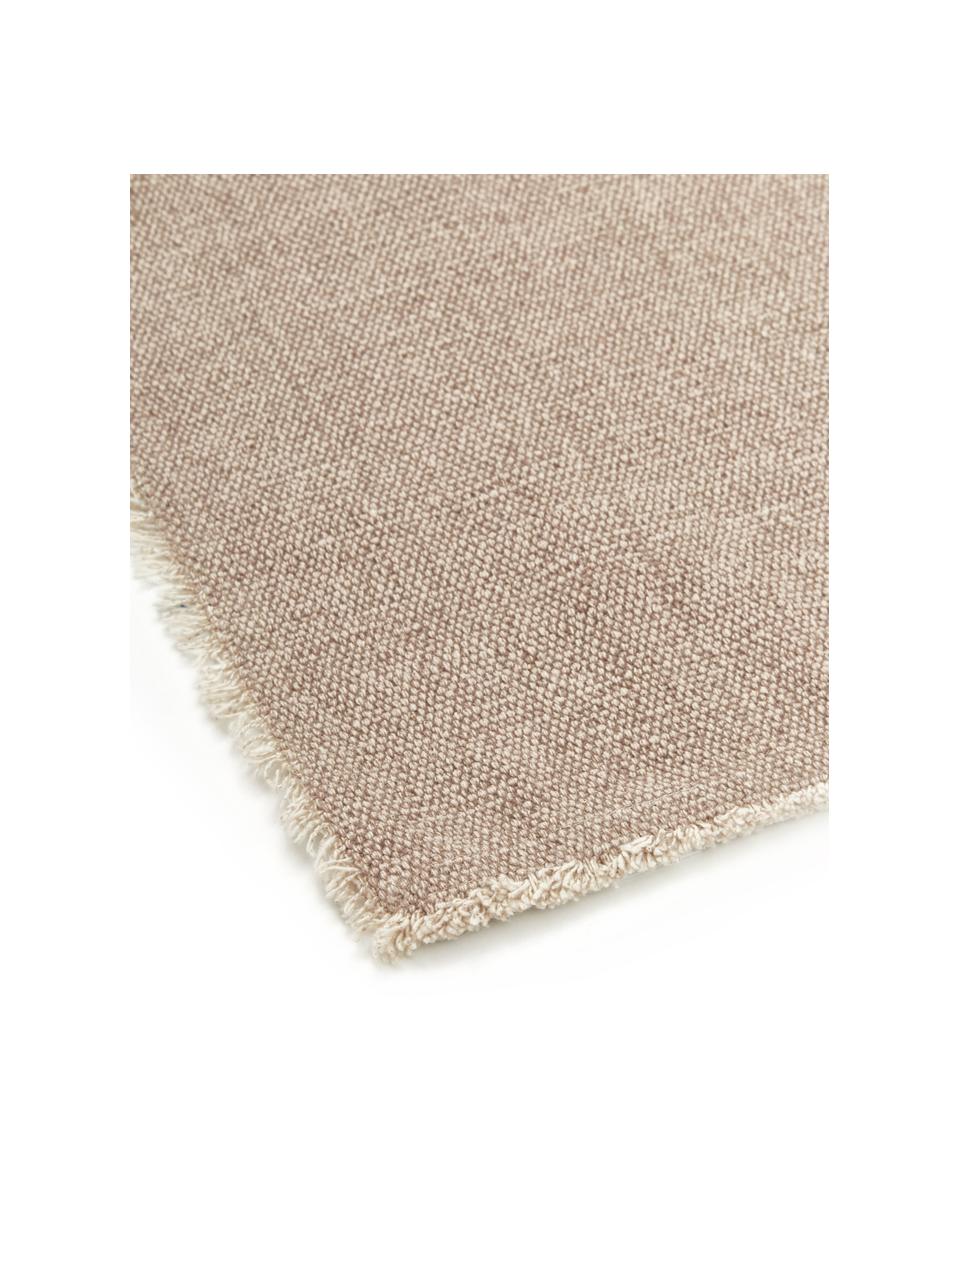 Baumwoll-Tischsets Edge in Beige, 6 Stück, 85% Baumwolle, 15% gemischte Fasern, Beige, 35 x 48 cm